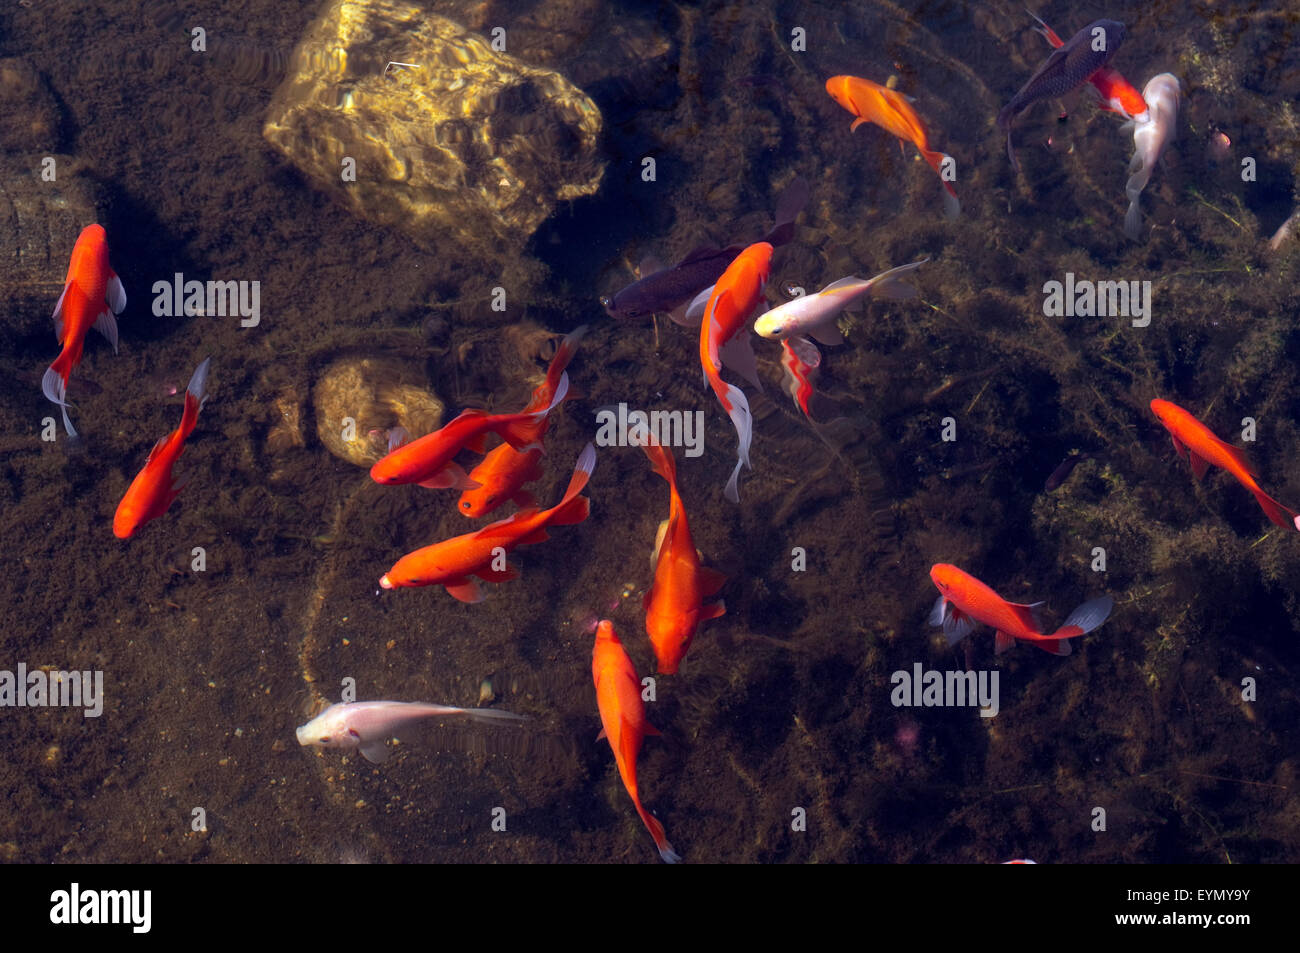 Goldfische, Carassius auratus, Stock Photo